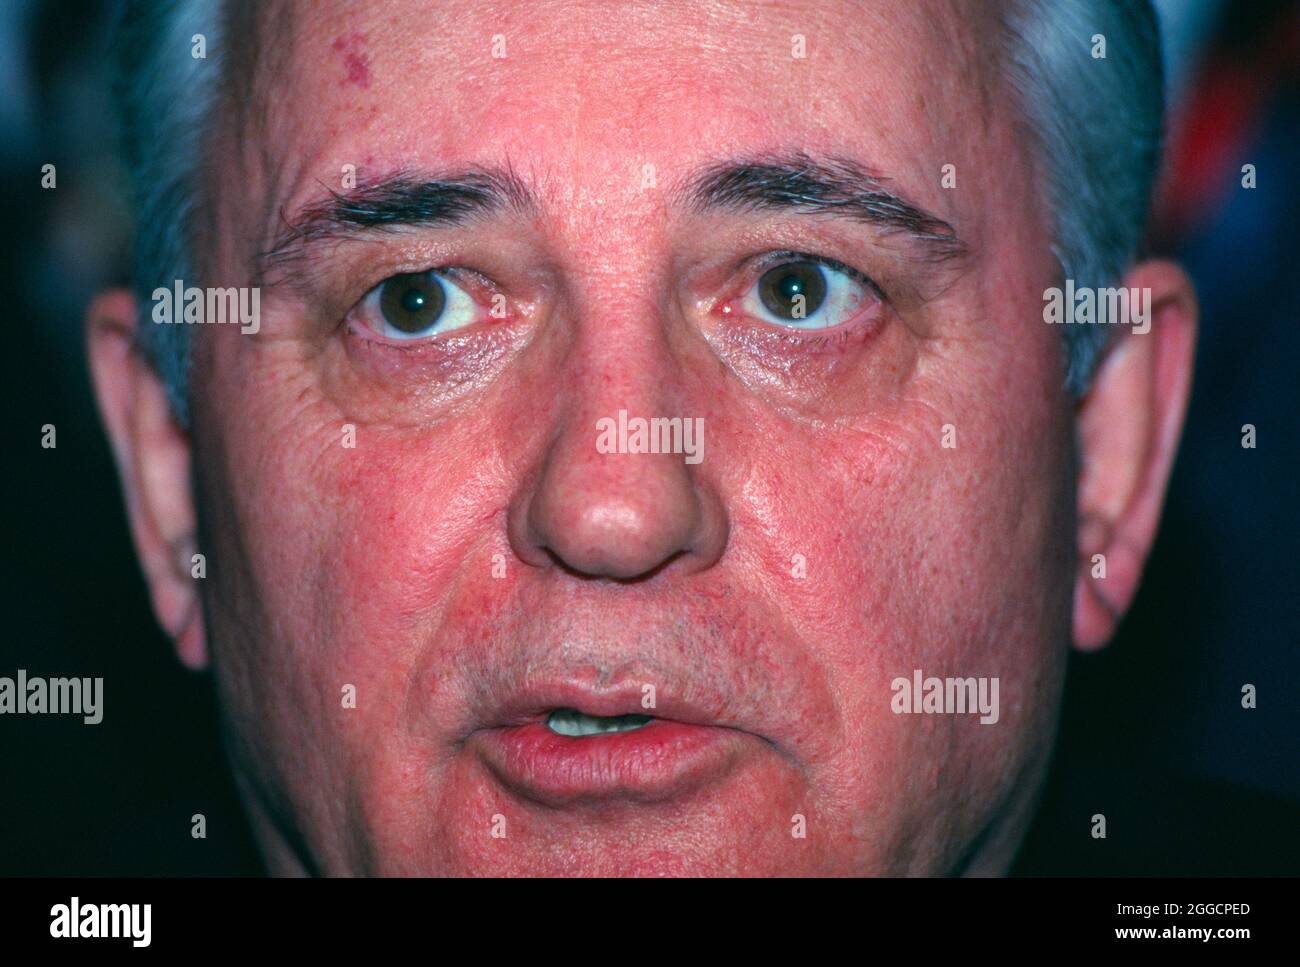 Mikhail Sergeyevich Gorbachev, nato nel 1931, ultimo presidente dell'Unione Sovietica. Gorbachev è stato Segretario Generale del Partito Comunista dell'Unione Sovietica dal 1985 al 1991 e ha servito come Capo di Stato dal 1988 al 1991. Foto Stock